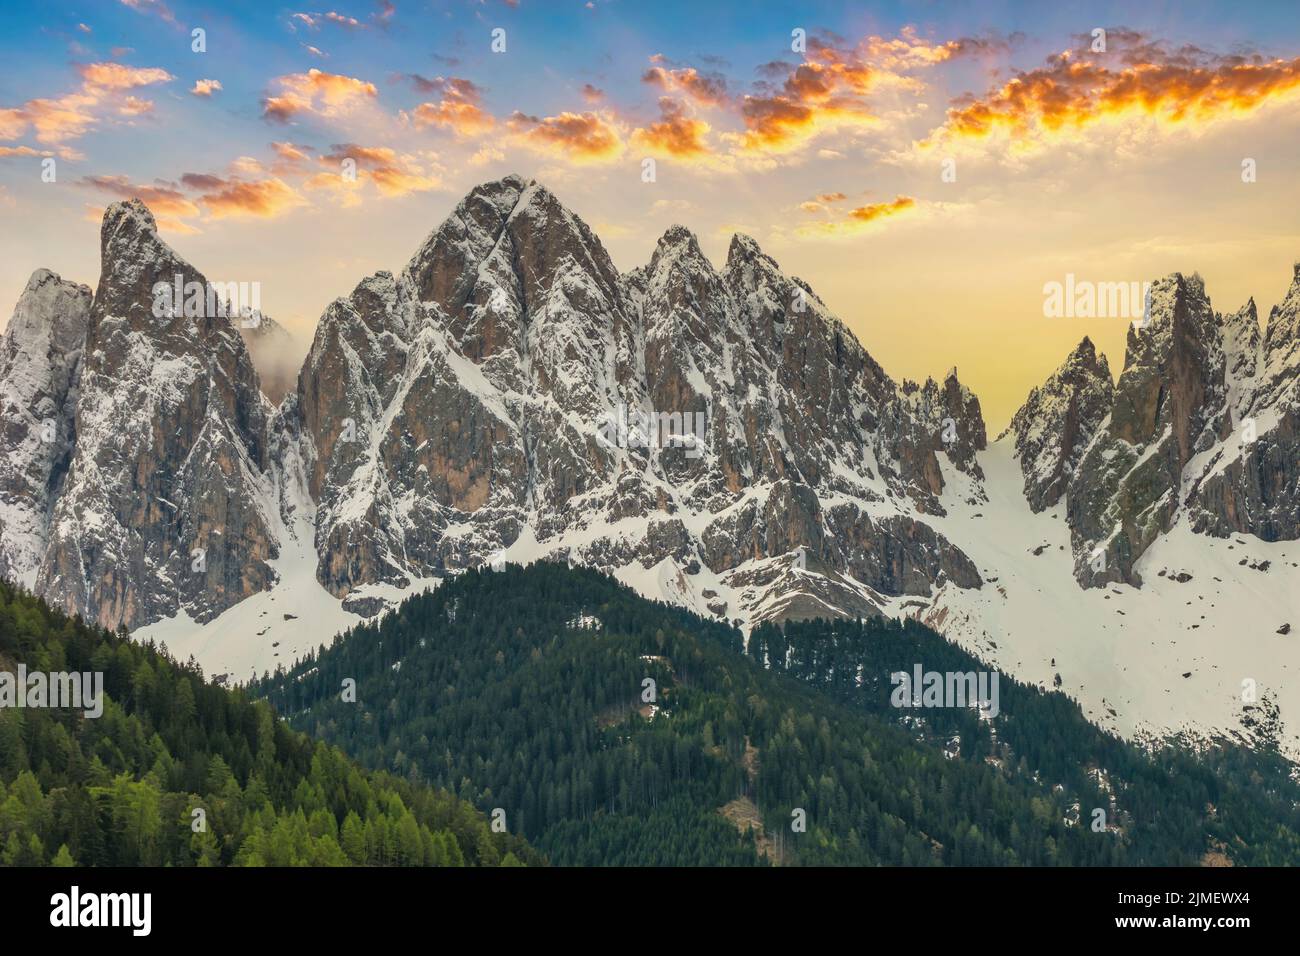 Dolomites Alpes montagne lever de soleil paysage au village de Santa Maddalena avec sentier de randonnée en saison de printemps Banque D'Images